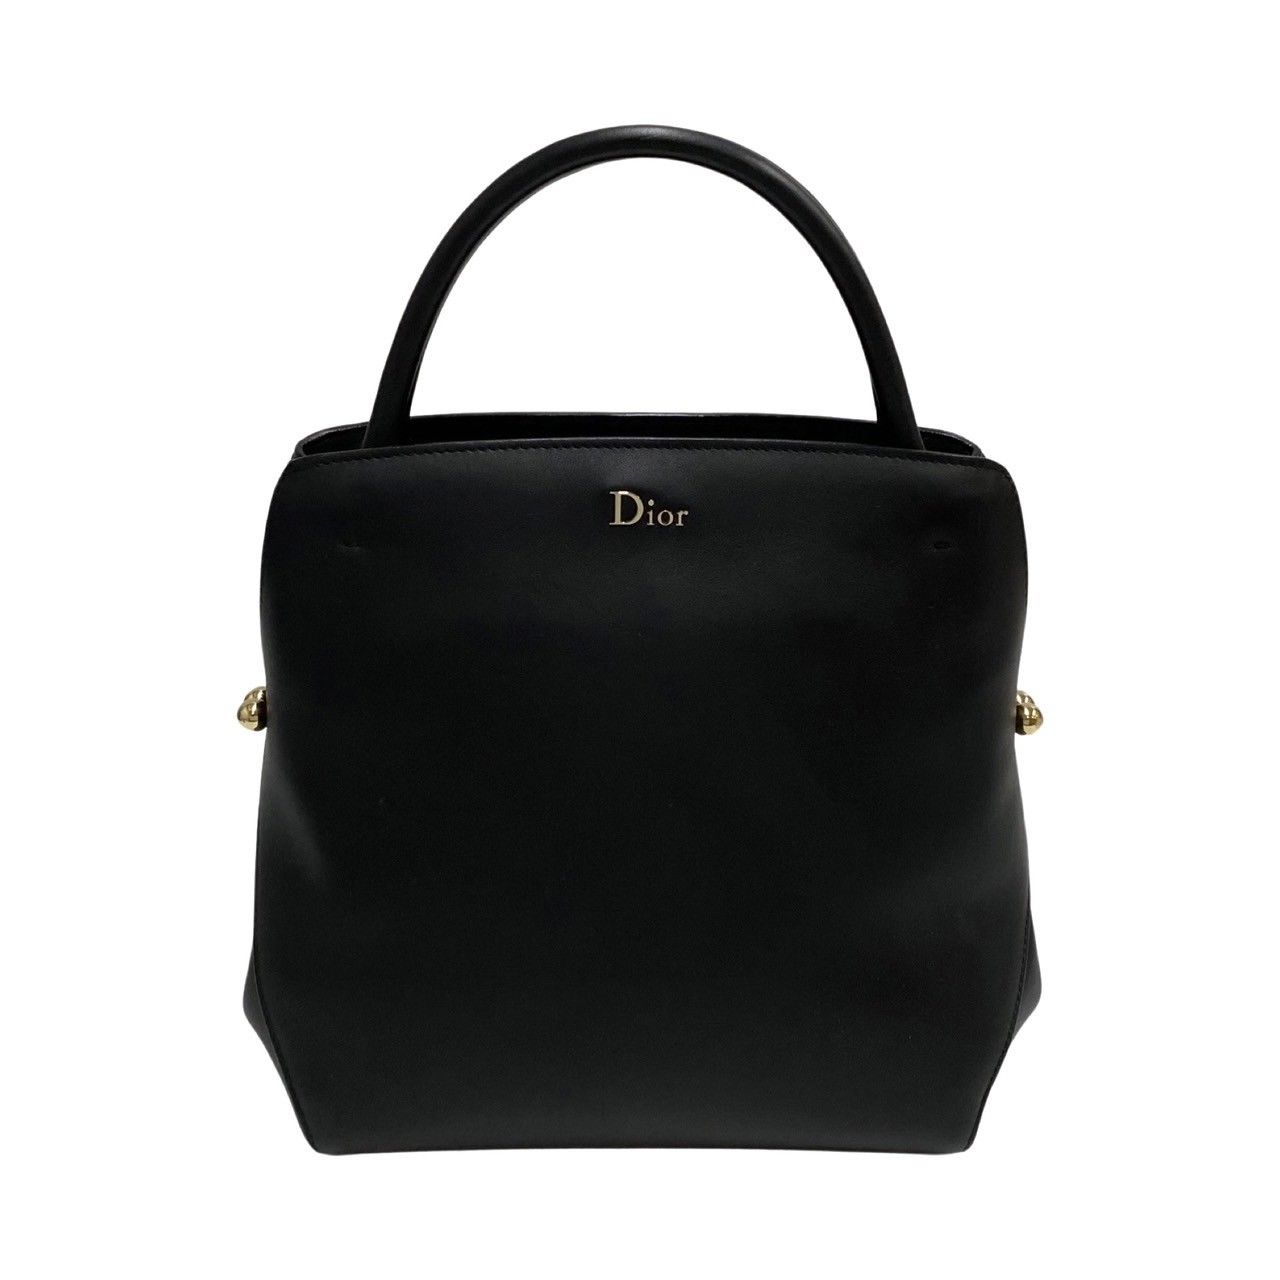 カラーブラック開閉式極 美品 希少品 箱 袋付き Christian Dior